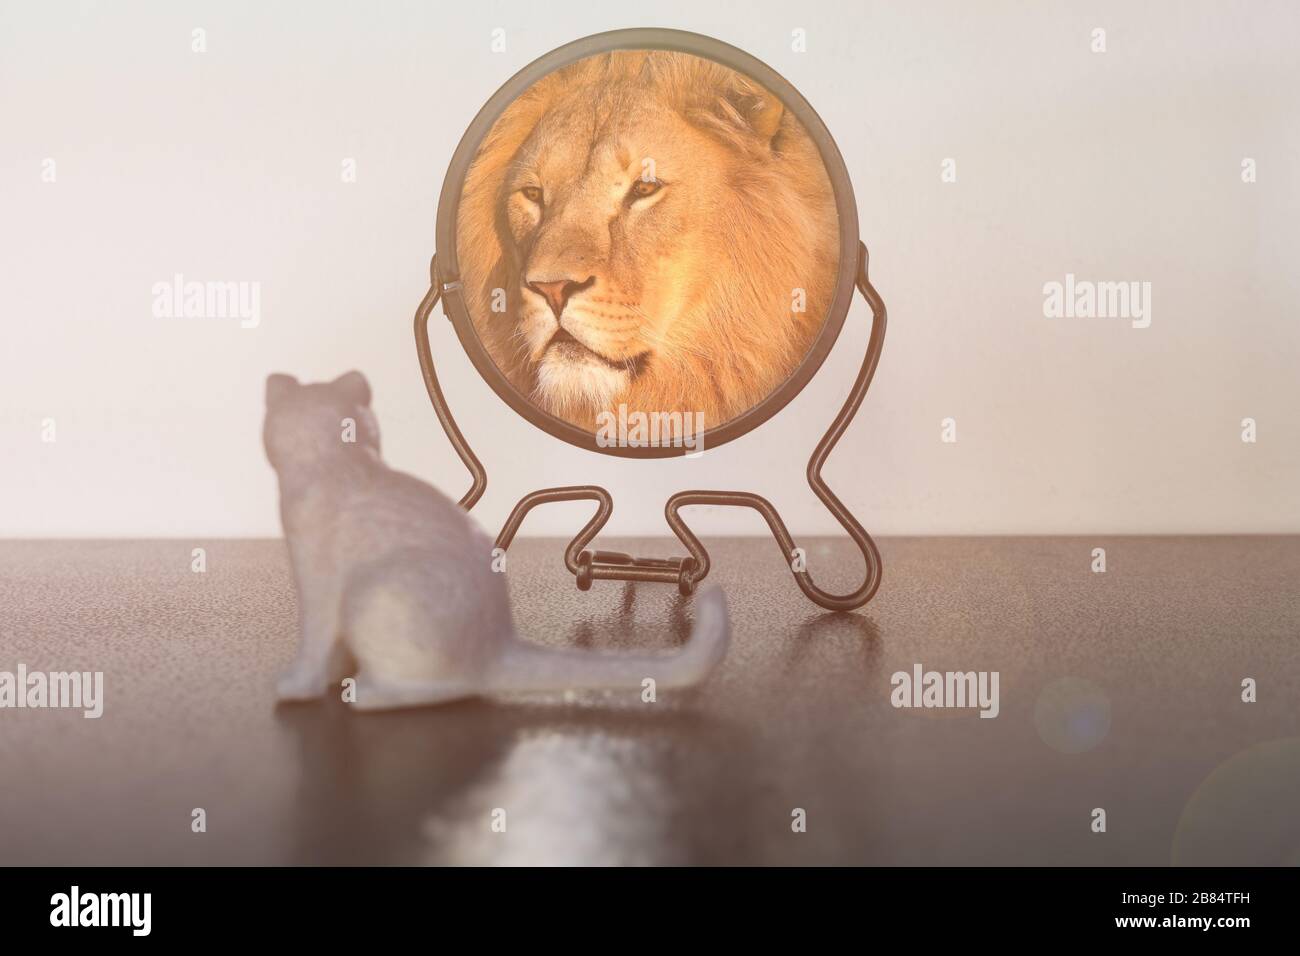 Kätzchen sieht in den Spiegel und sieht sich wie ein Löwe reflektiert. Selbstvertrauenskonzept. Geschäftliches oder persönliches Wachstum. Stockfoto